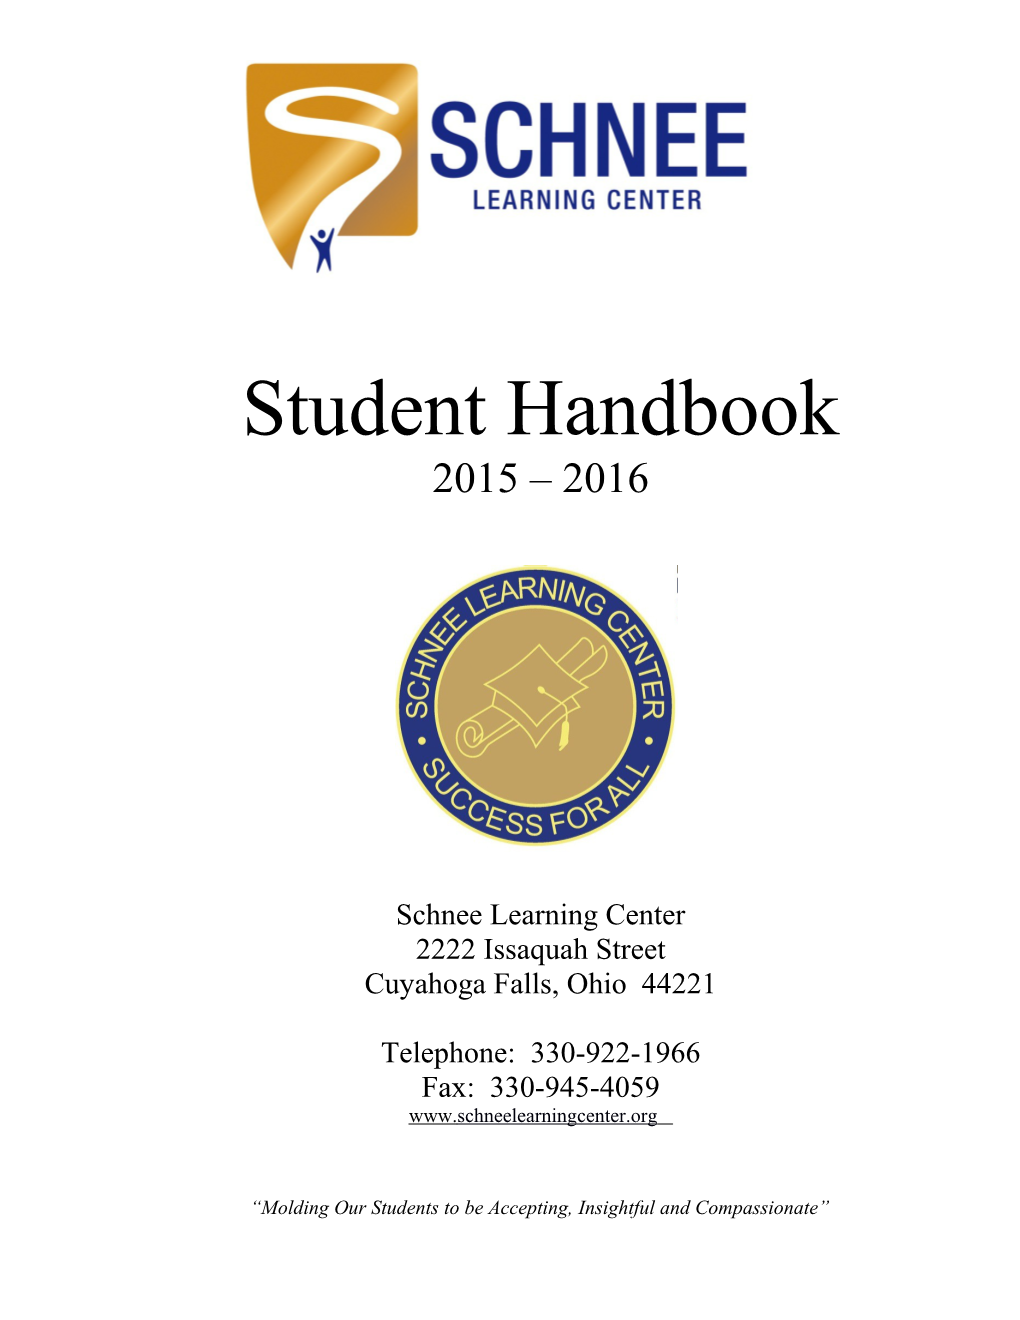 Schnee 2014-2015 Student Handbook (00136819)